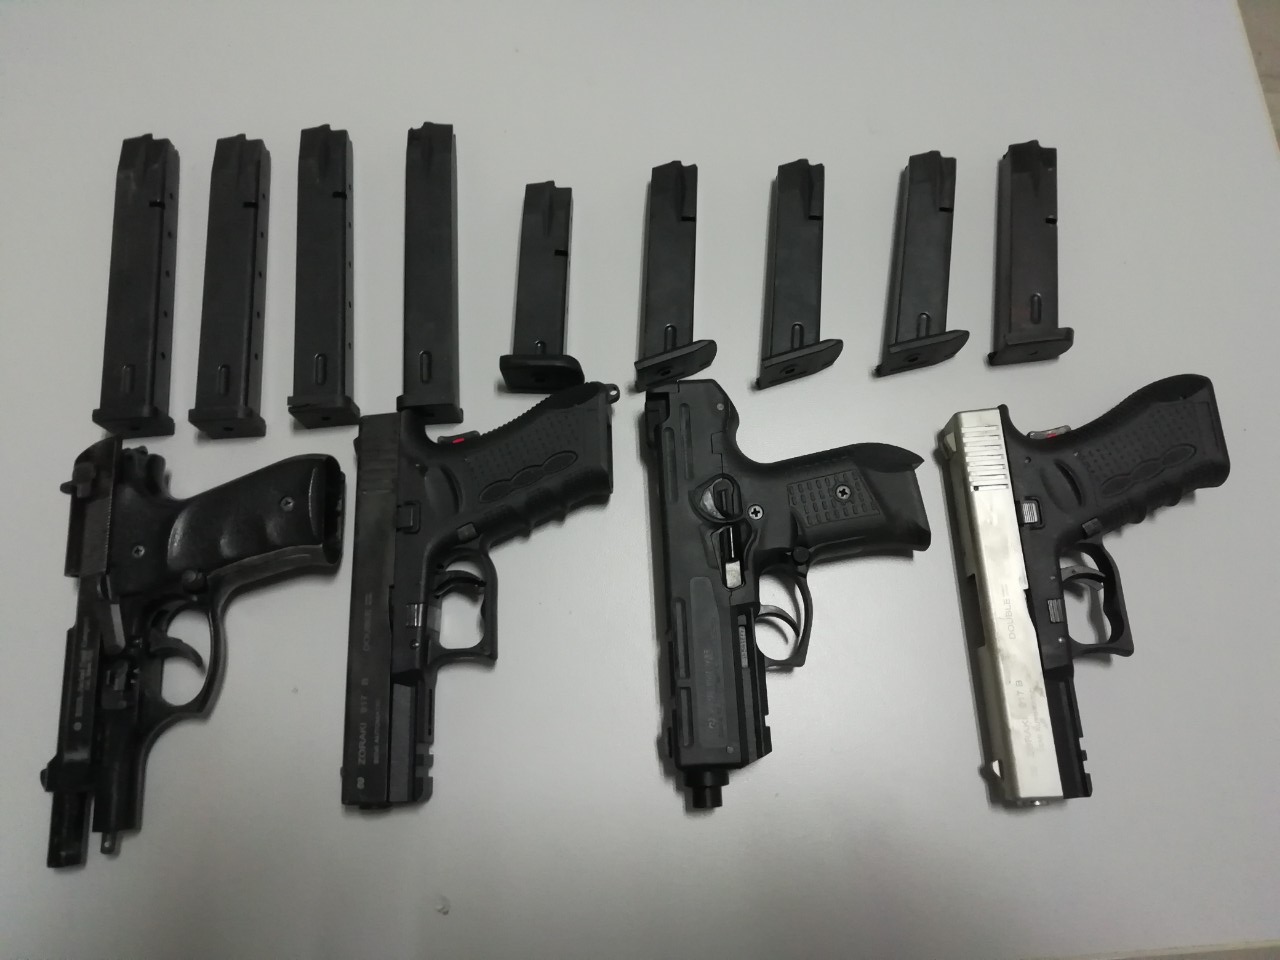 Τέσσερα πιστόλια και 8 γεμιστήρες βρέθηκαν στην κατοχή ατόμου στον δήμο Πλατανιά